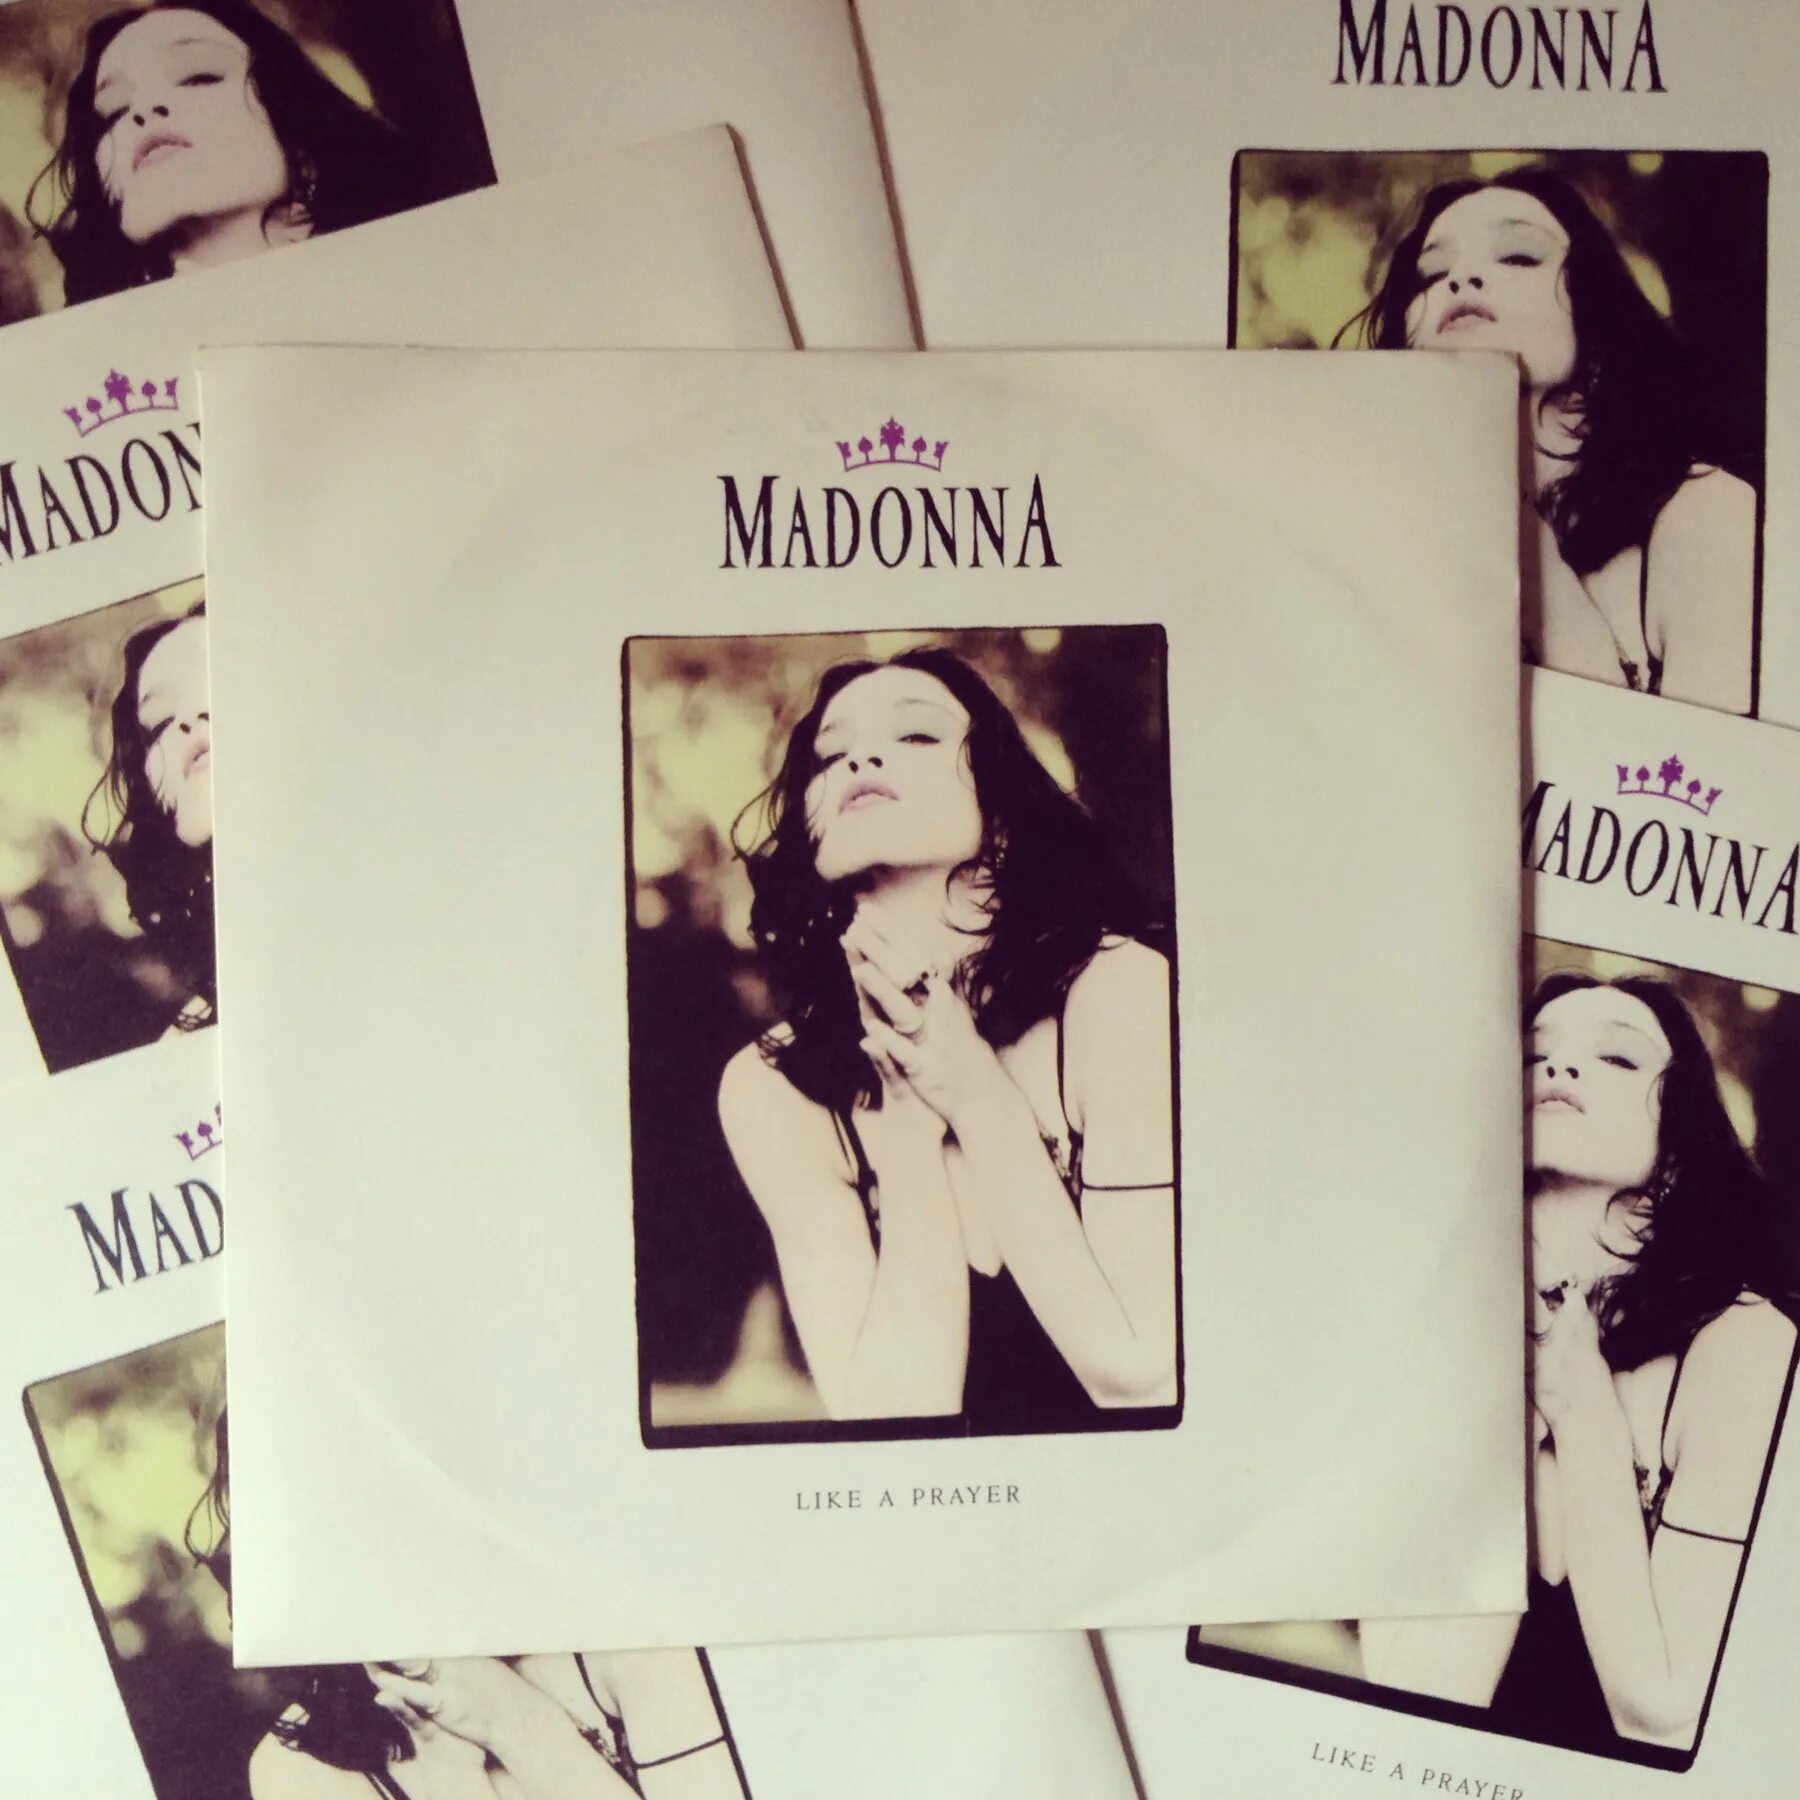 Like madonna песня. Madonna like a Prayer обложка. Madonna like a Prayer Vinyl. Madonna like a Prayer винил. Like a Prayer album.